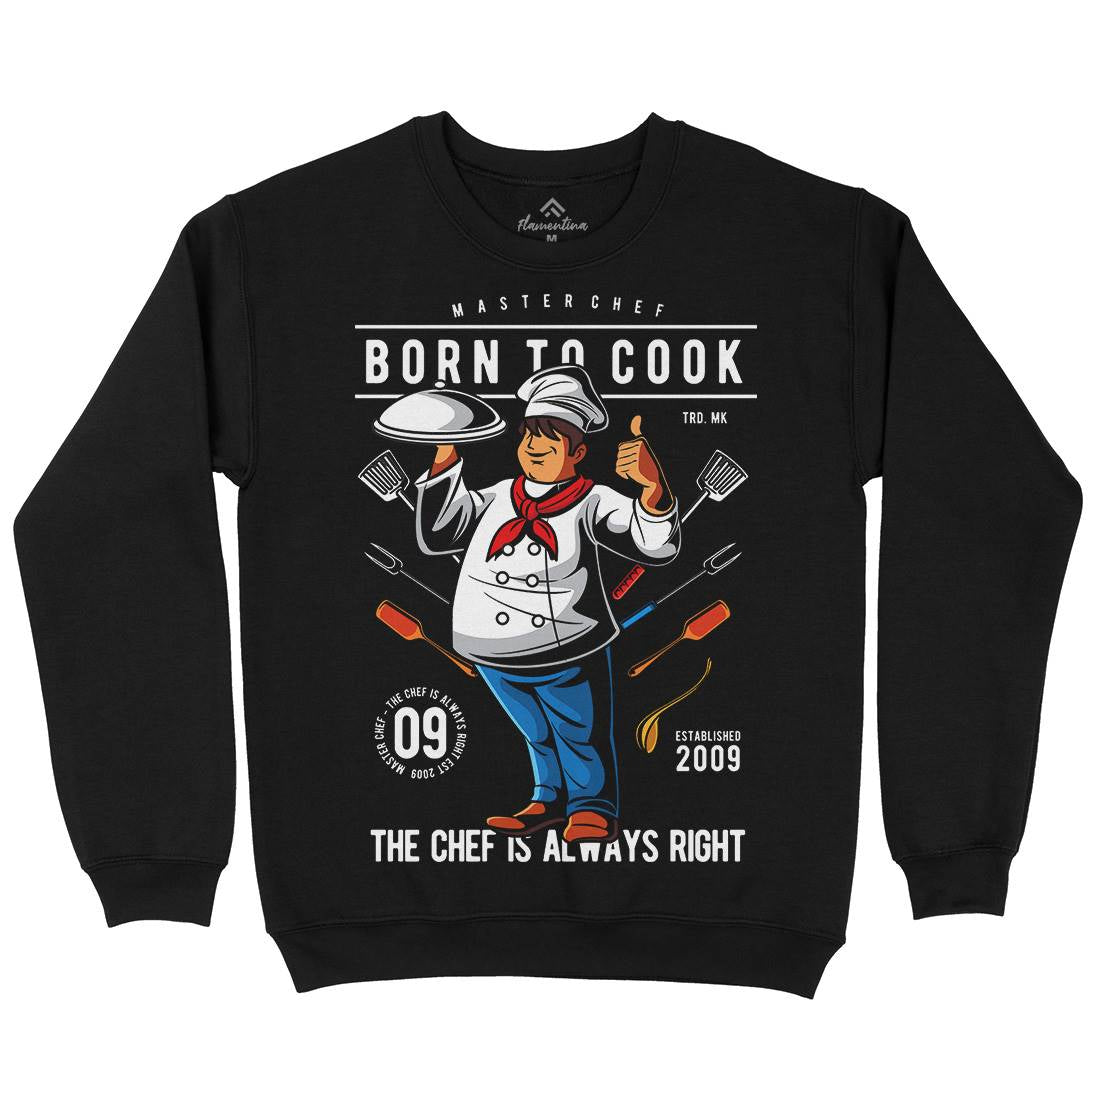 Born To Cook Kids Crew Neck Sweatshirt Work C322